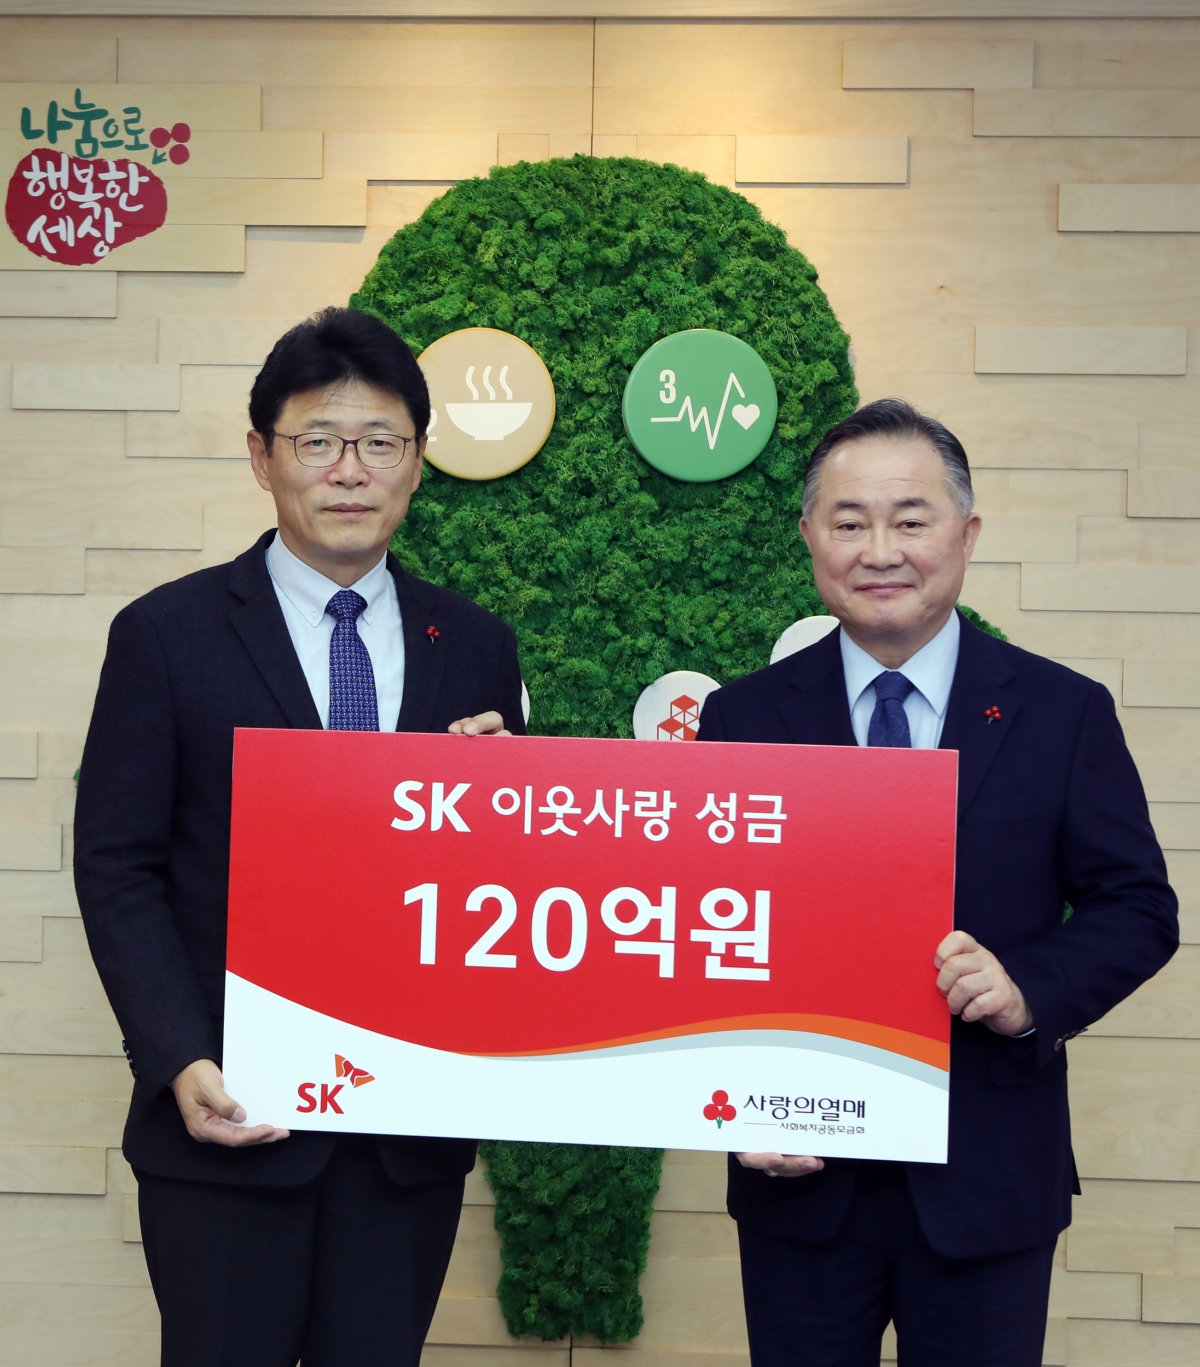 이형희 SK SV위원장(왼쪽)이 19일 서울 중구 사랑의 열매 회관에서 예종석 사회복지공동모금회장에게 이웃사랑 성금을 전달하고 있다.